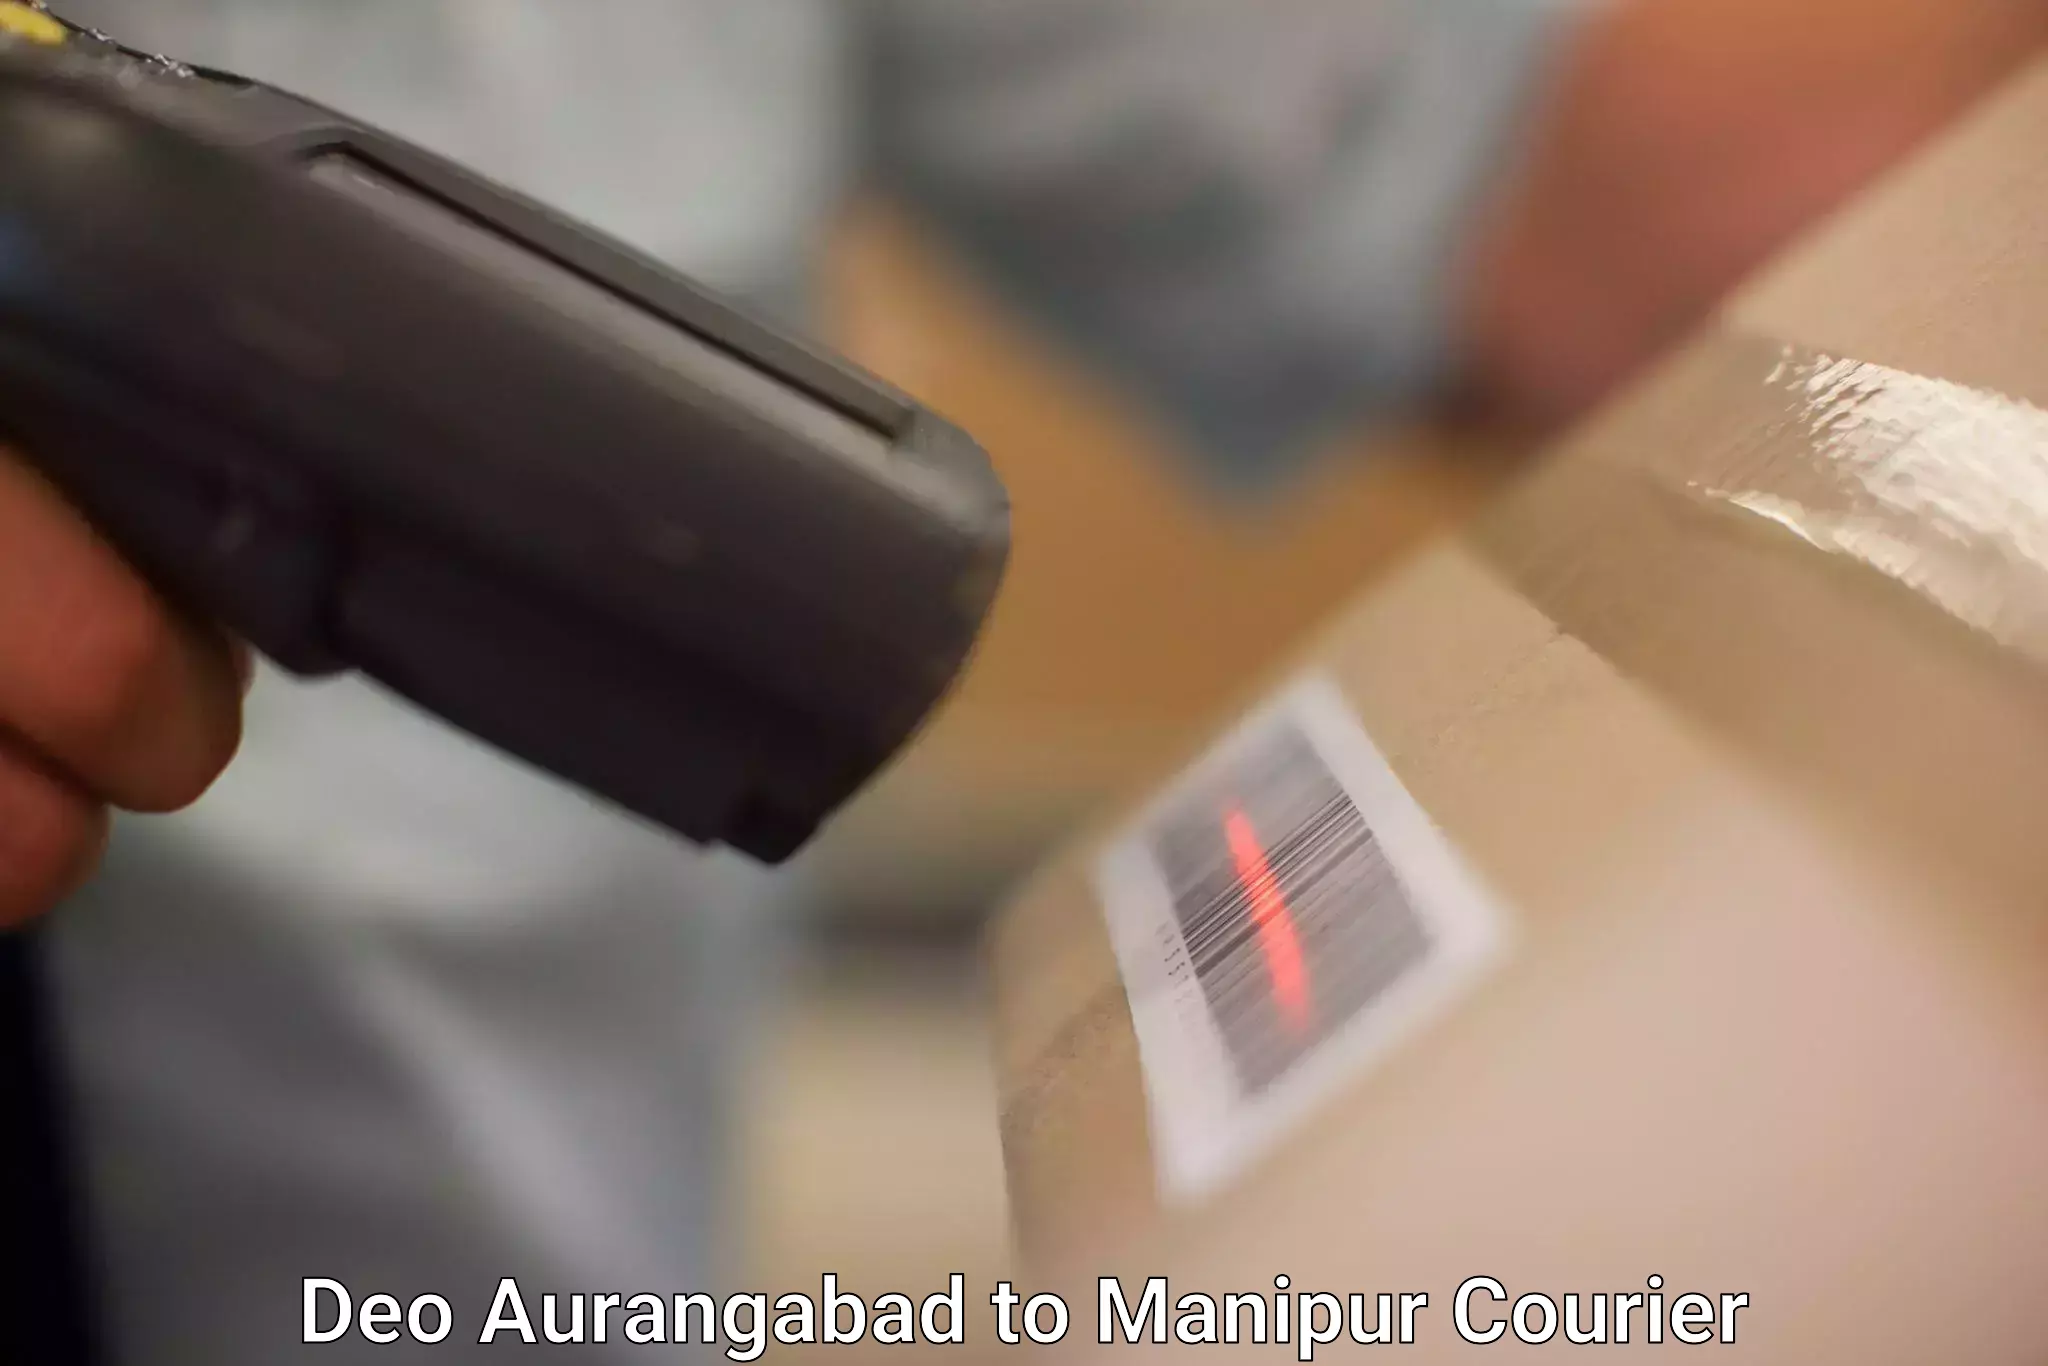 Premium courier solutions Deo Aurangabad to IIIT Senapati